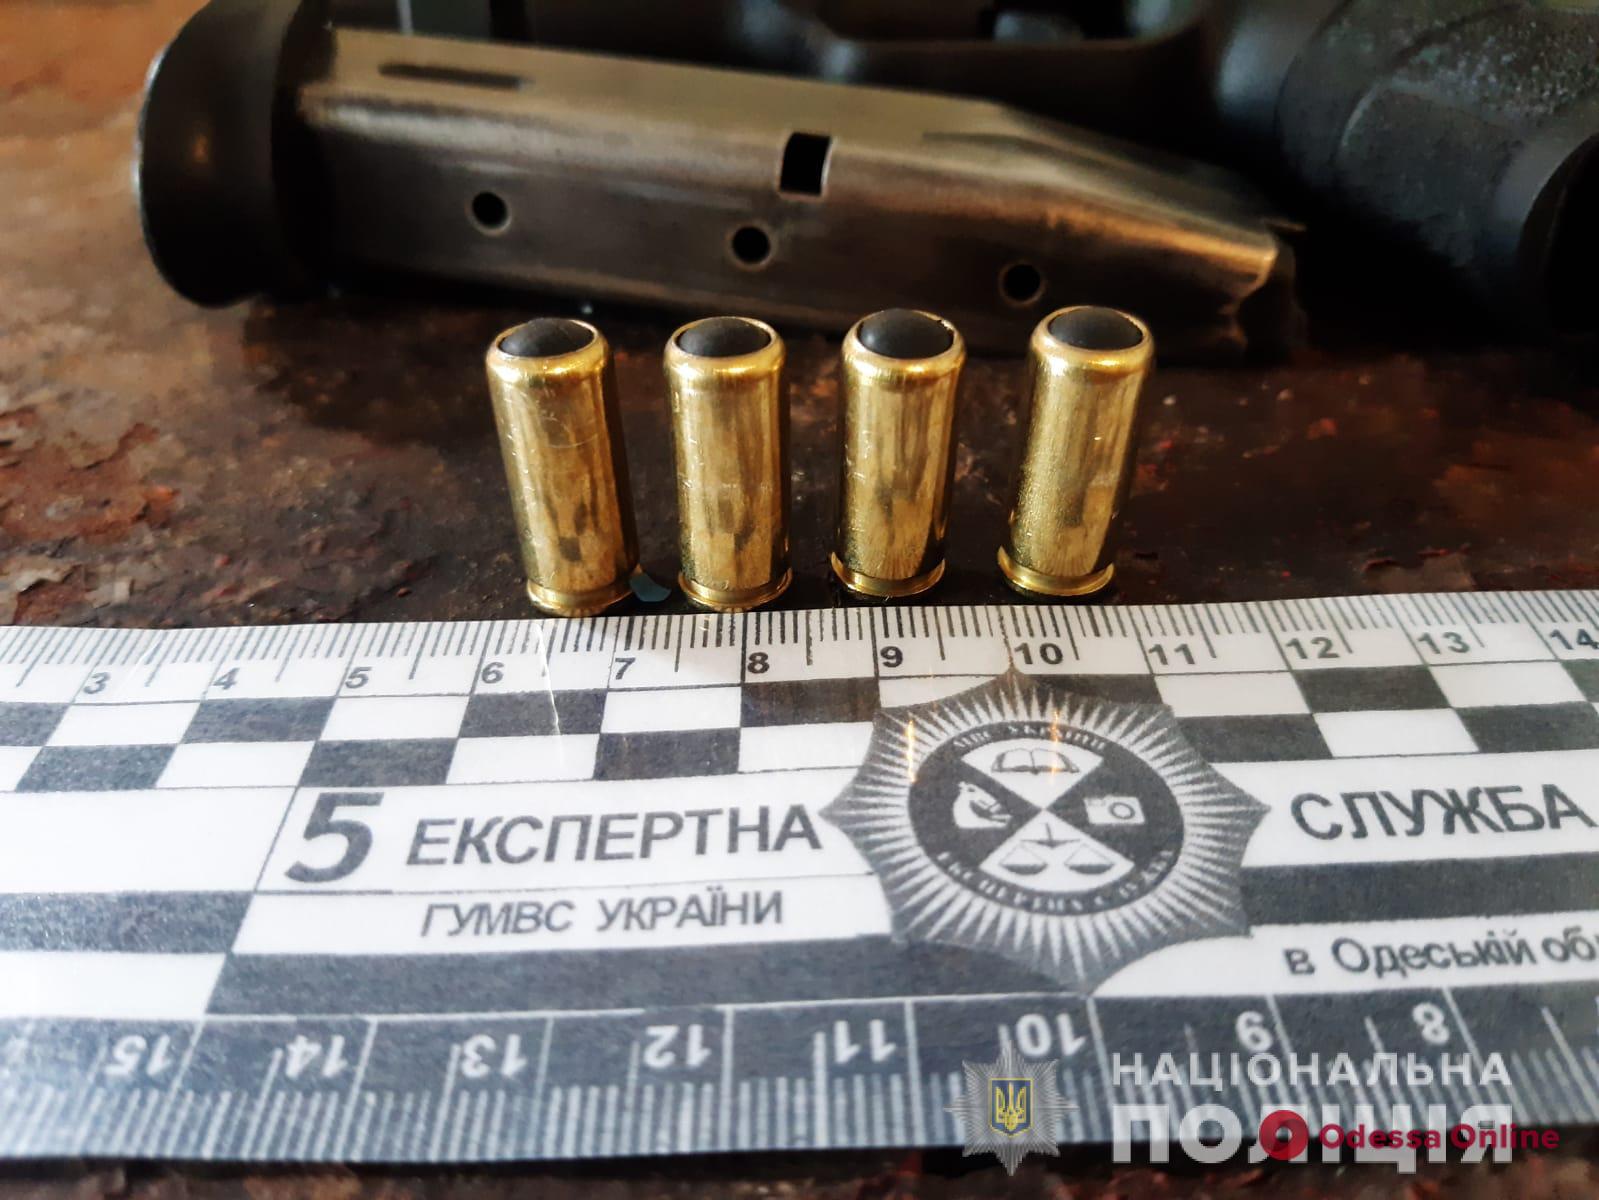 В Одессе женщина нашла пистолет и случайно прострелила себе ногу